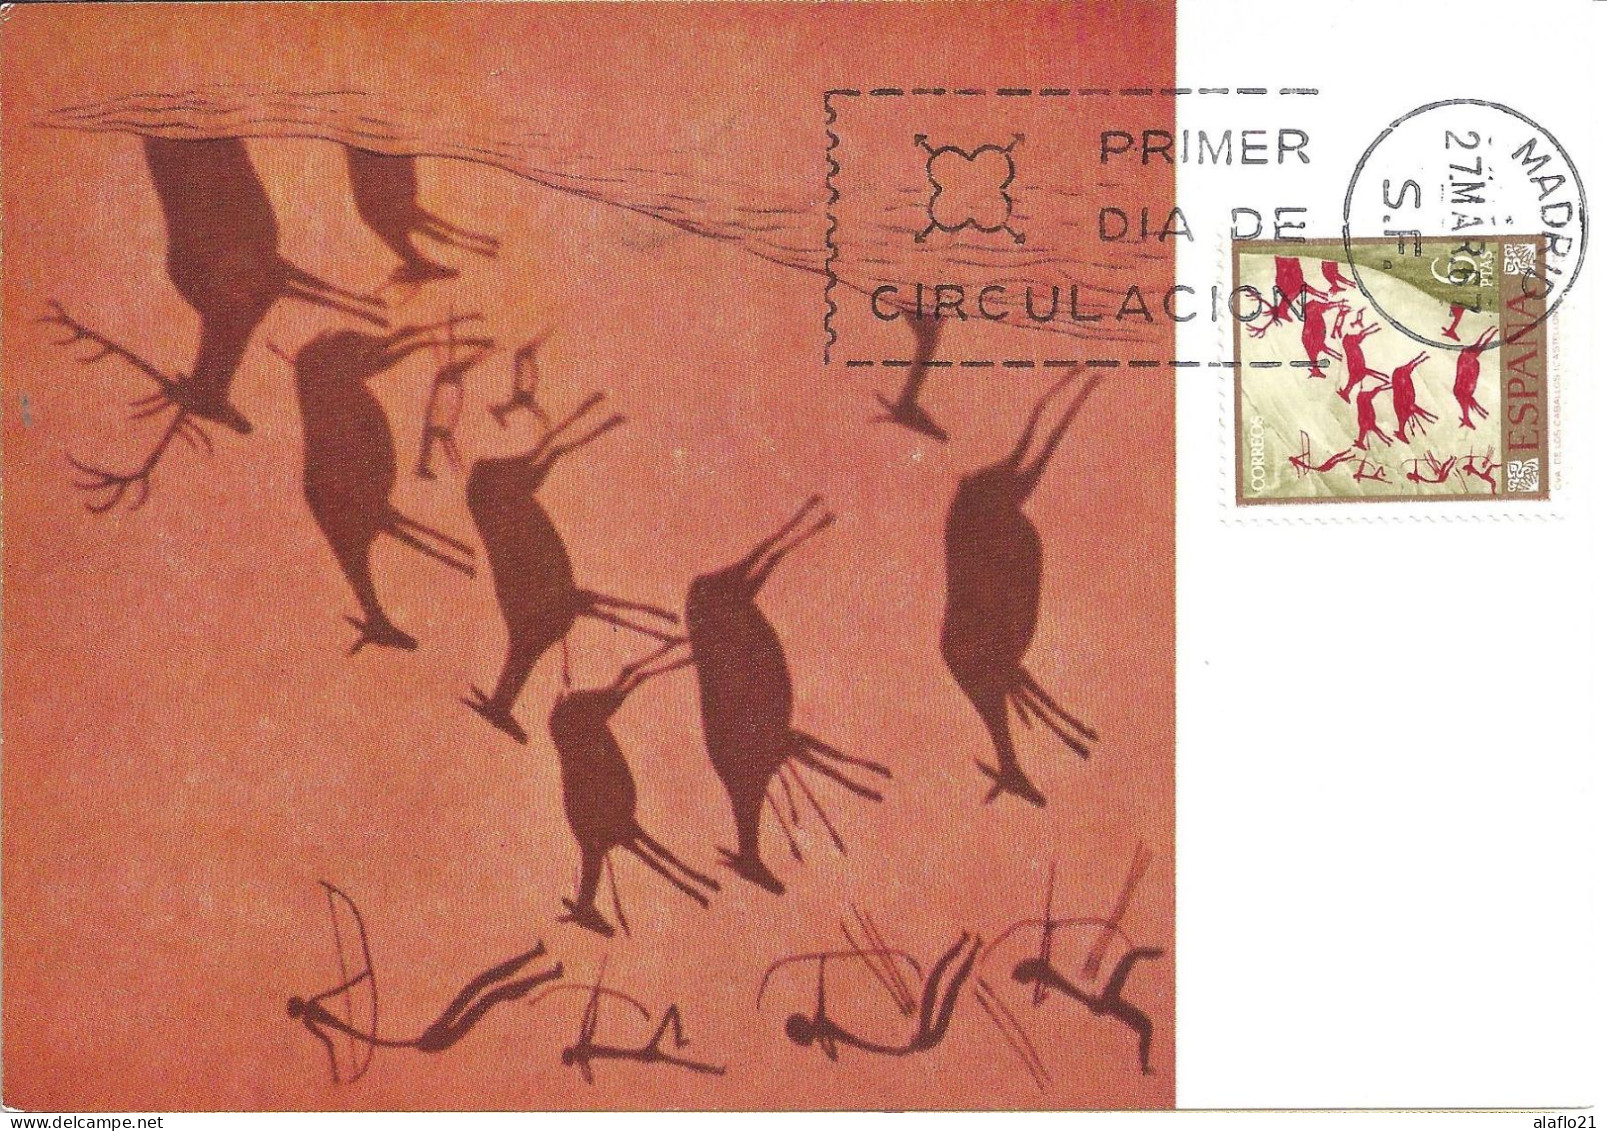 ESPAGNE - CARTE MAXIMUM - Yvert N° 1441 - PEINTURES RUPESTRES - JOURNEE Du TIMBRE 1967 - Cartes Maximum